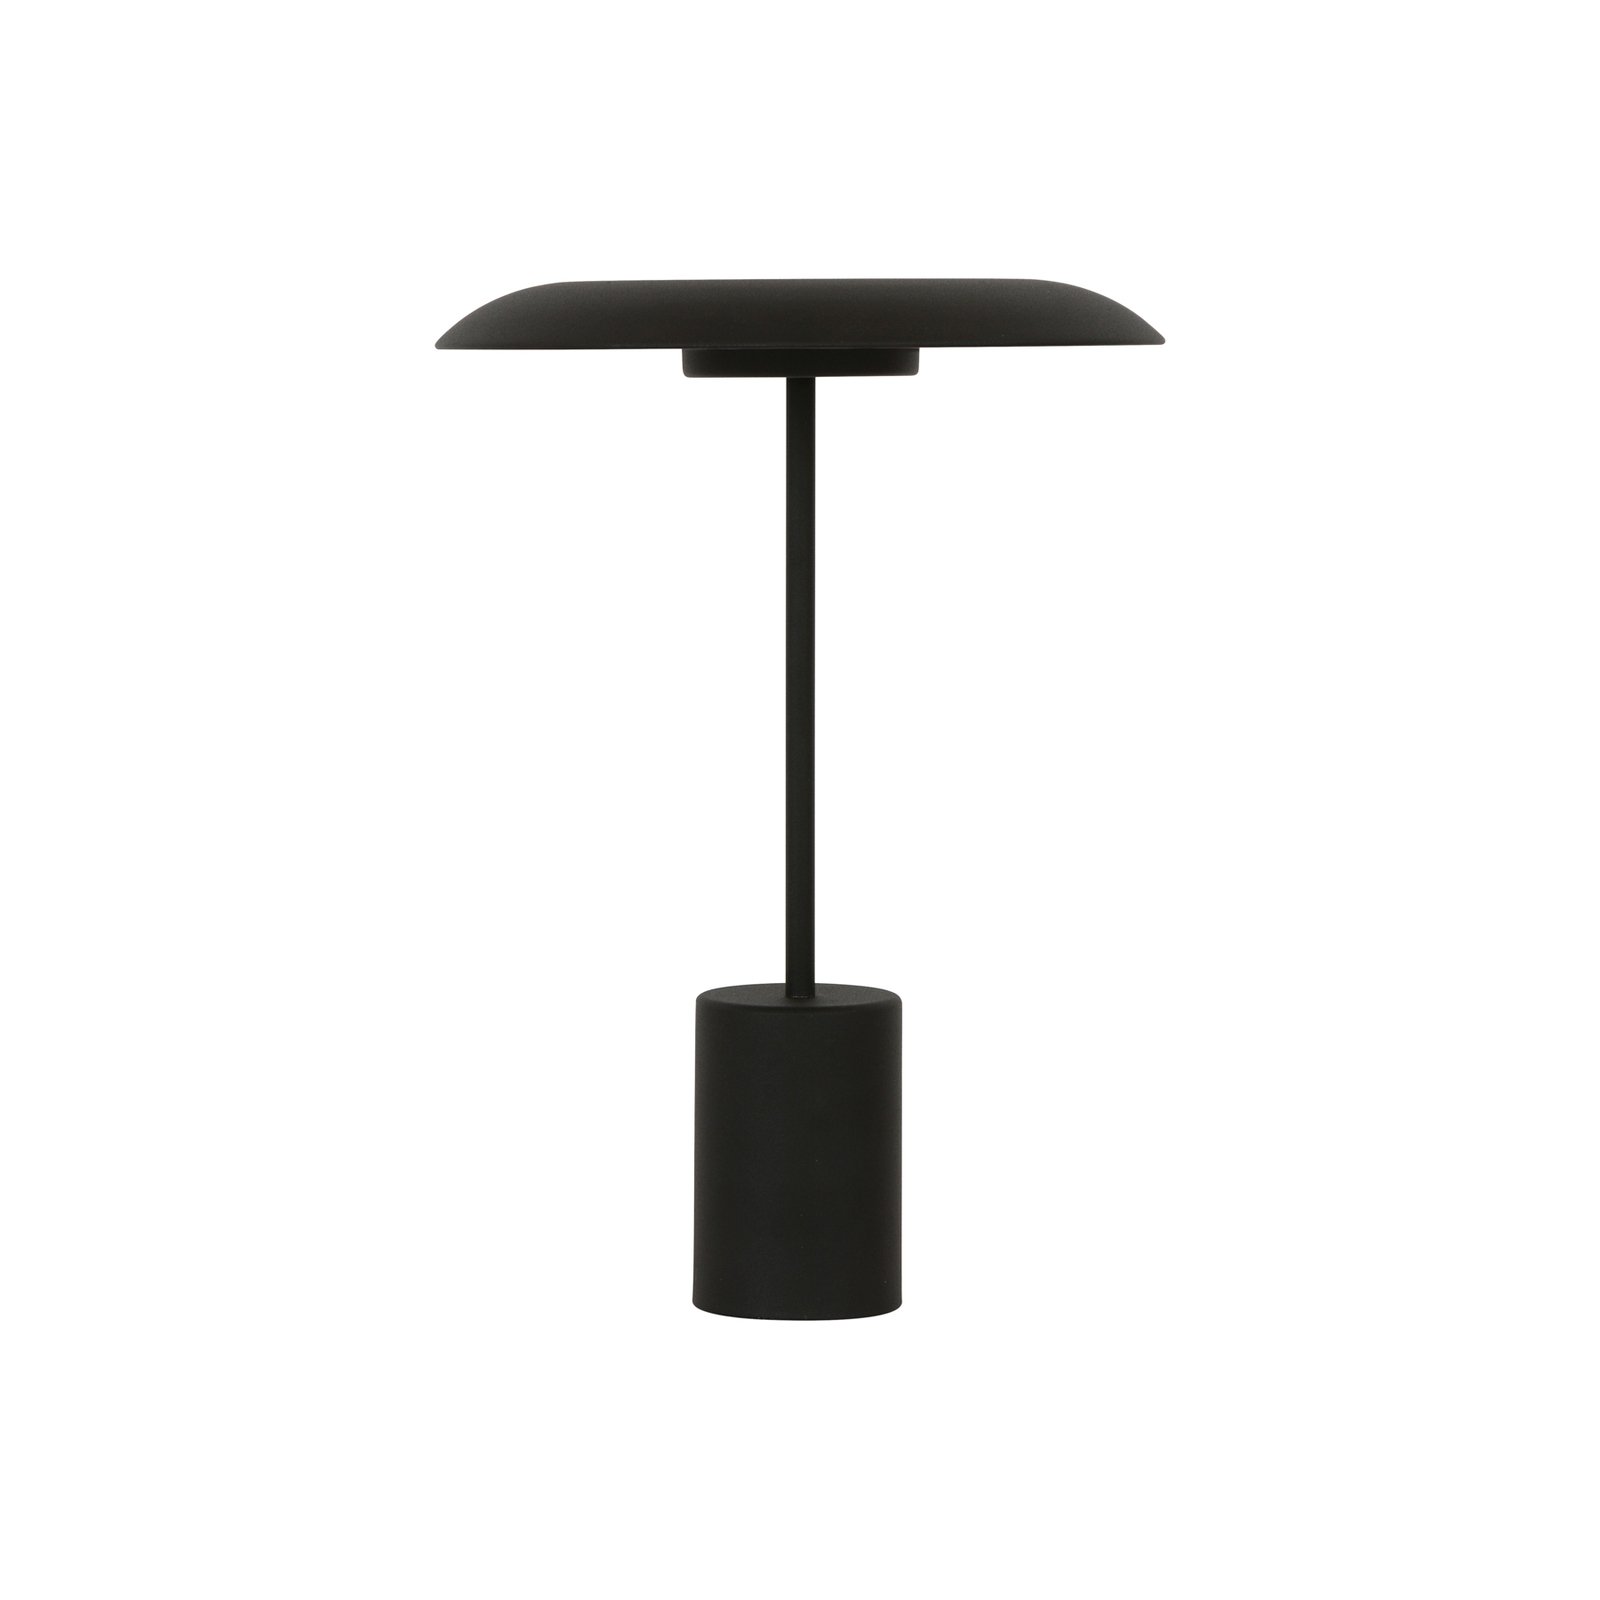 Stolná LED lampa Beacon Smith, čierna, kov, USB port